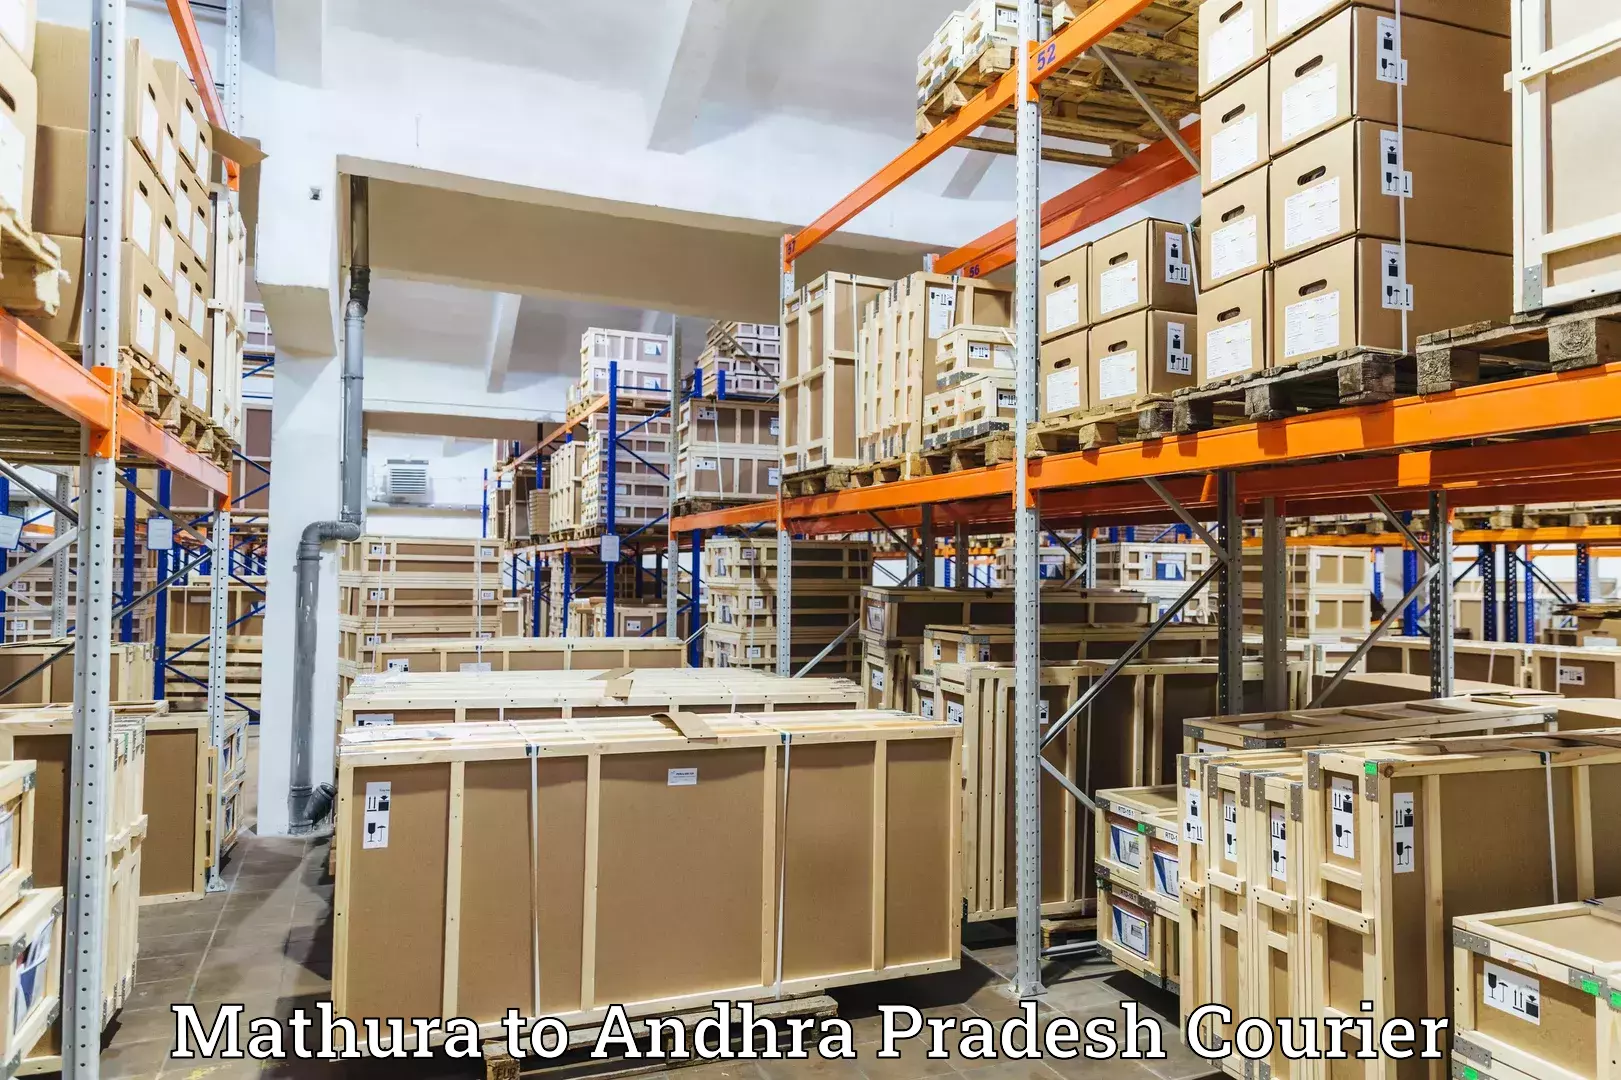 Door-to-door freight service Mathura to Andhra Pradesh